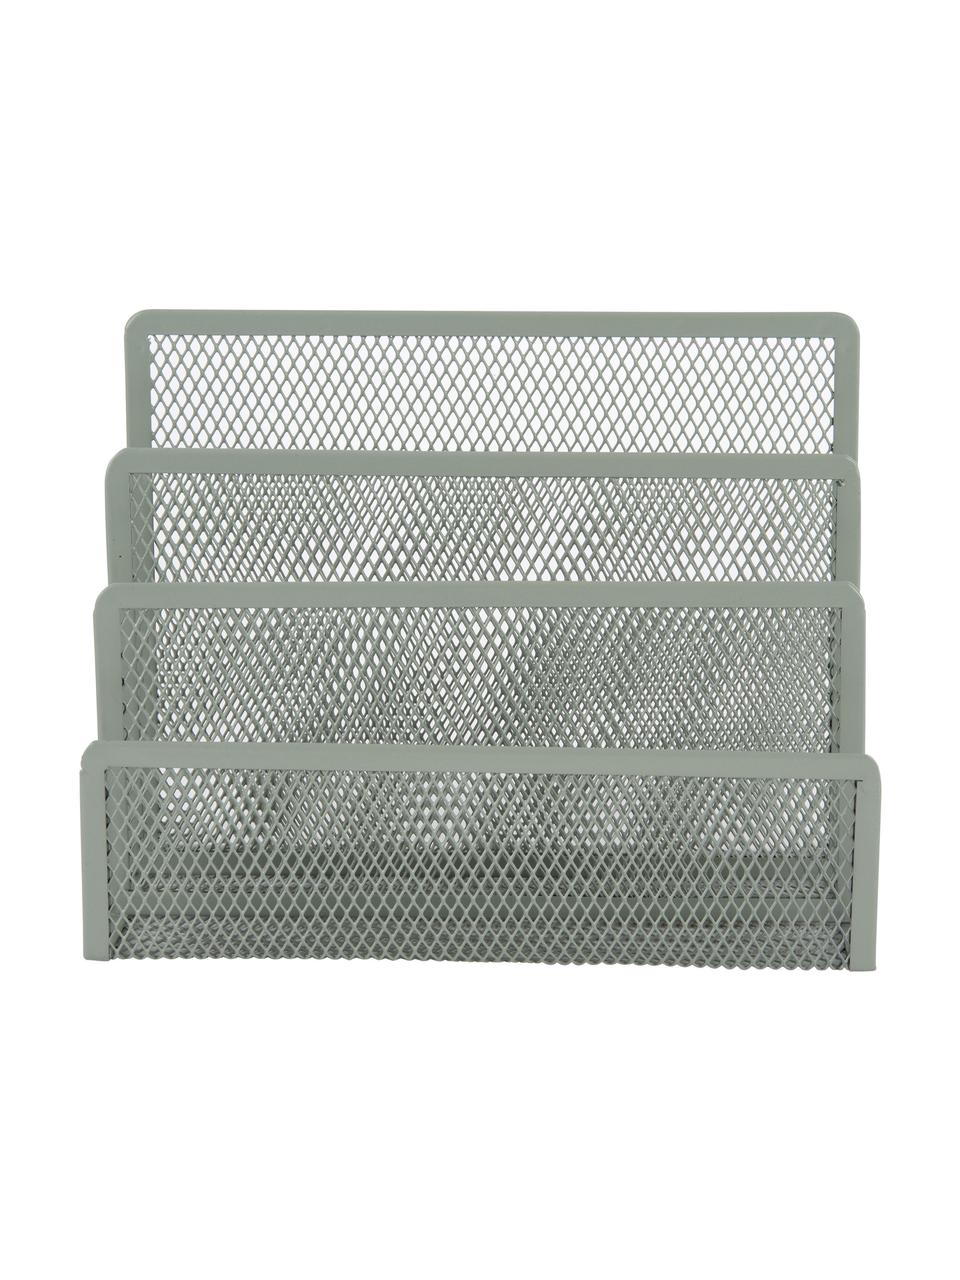 Brieforganizer Essentials in grijsgroen, Gecoat metaal, Grijsgroen, B 18 cm x H 13 cm